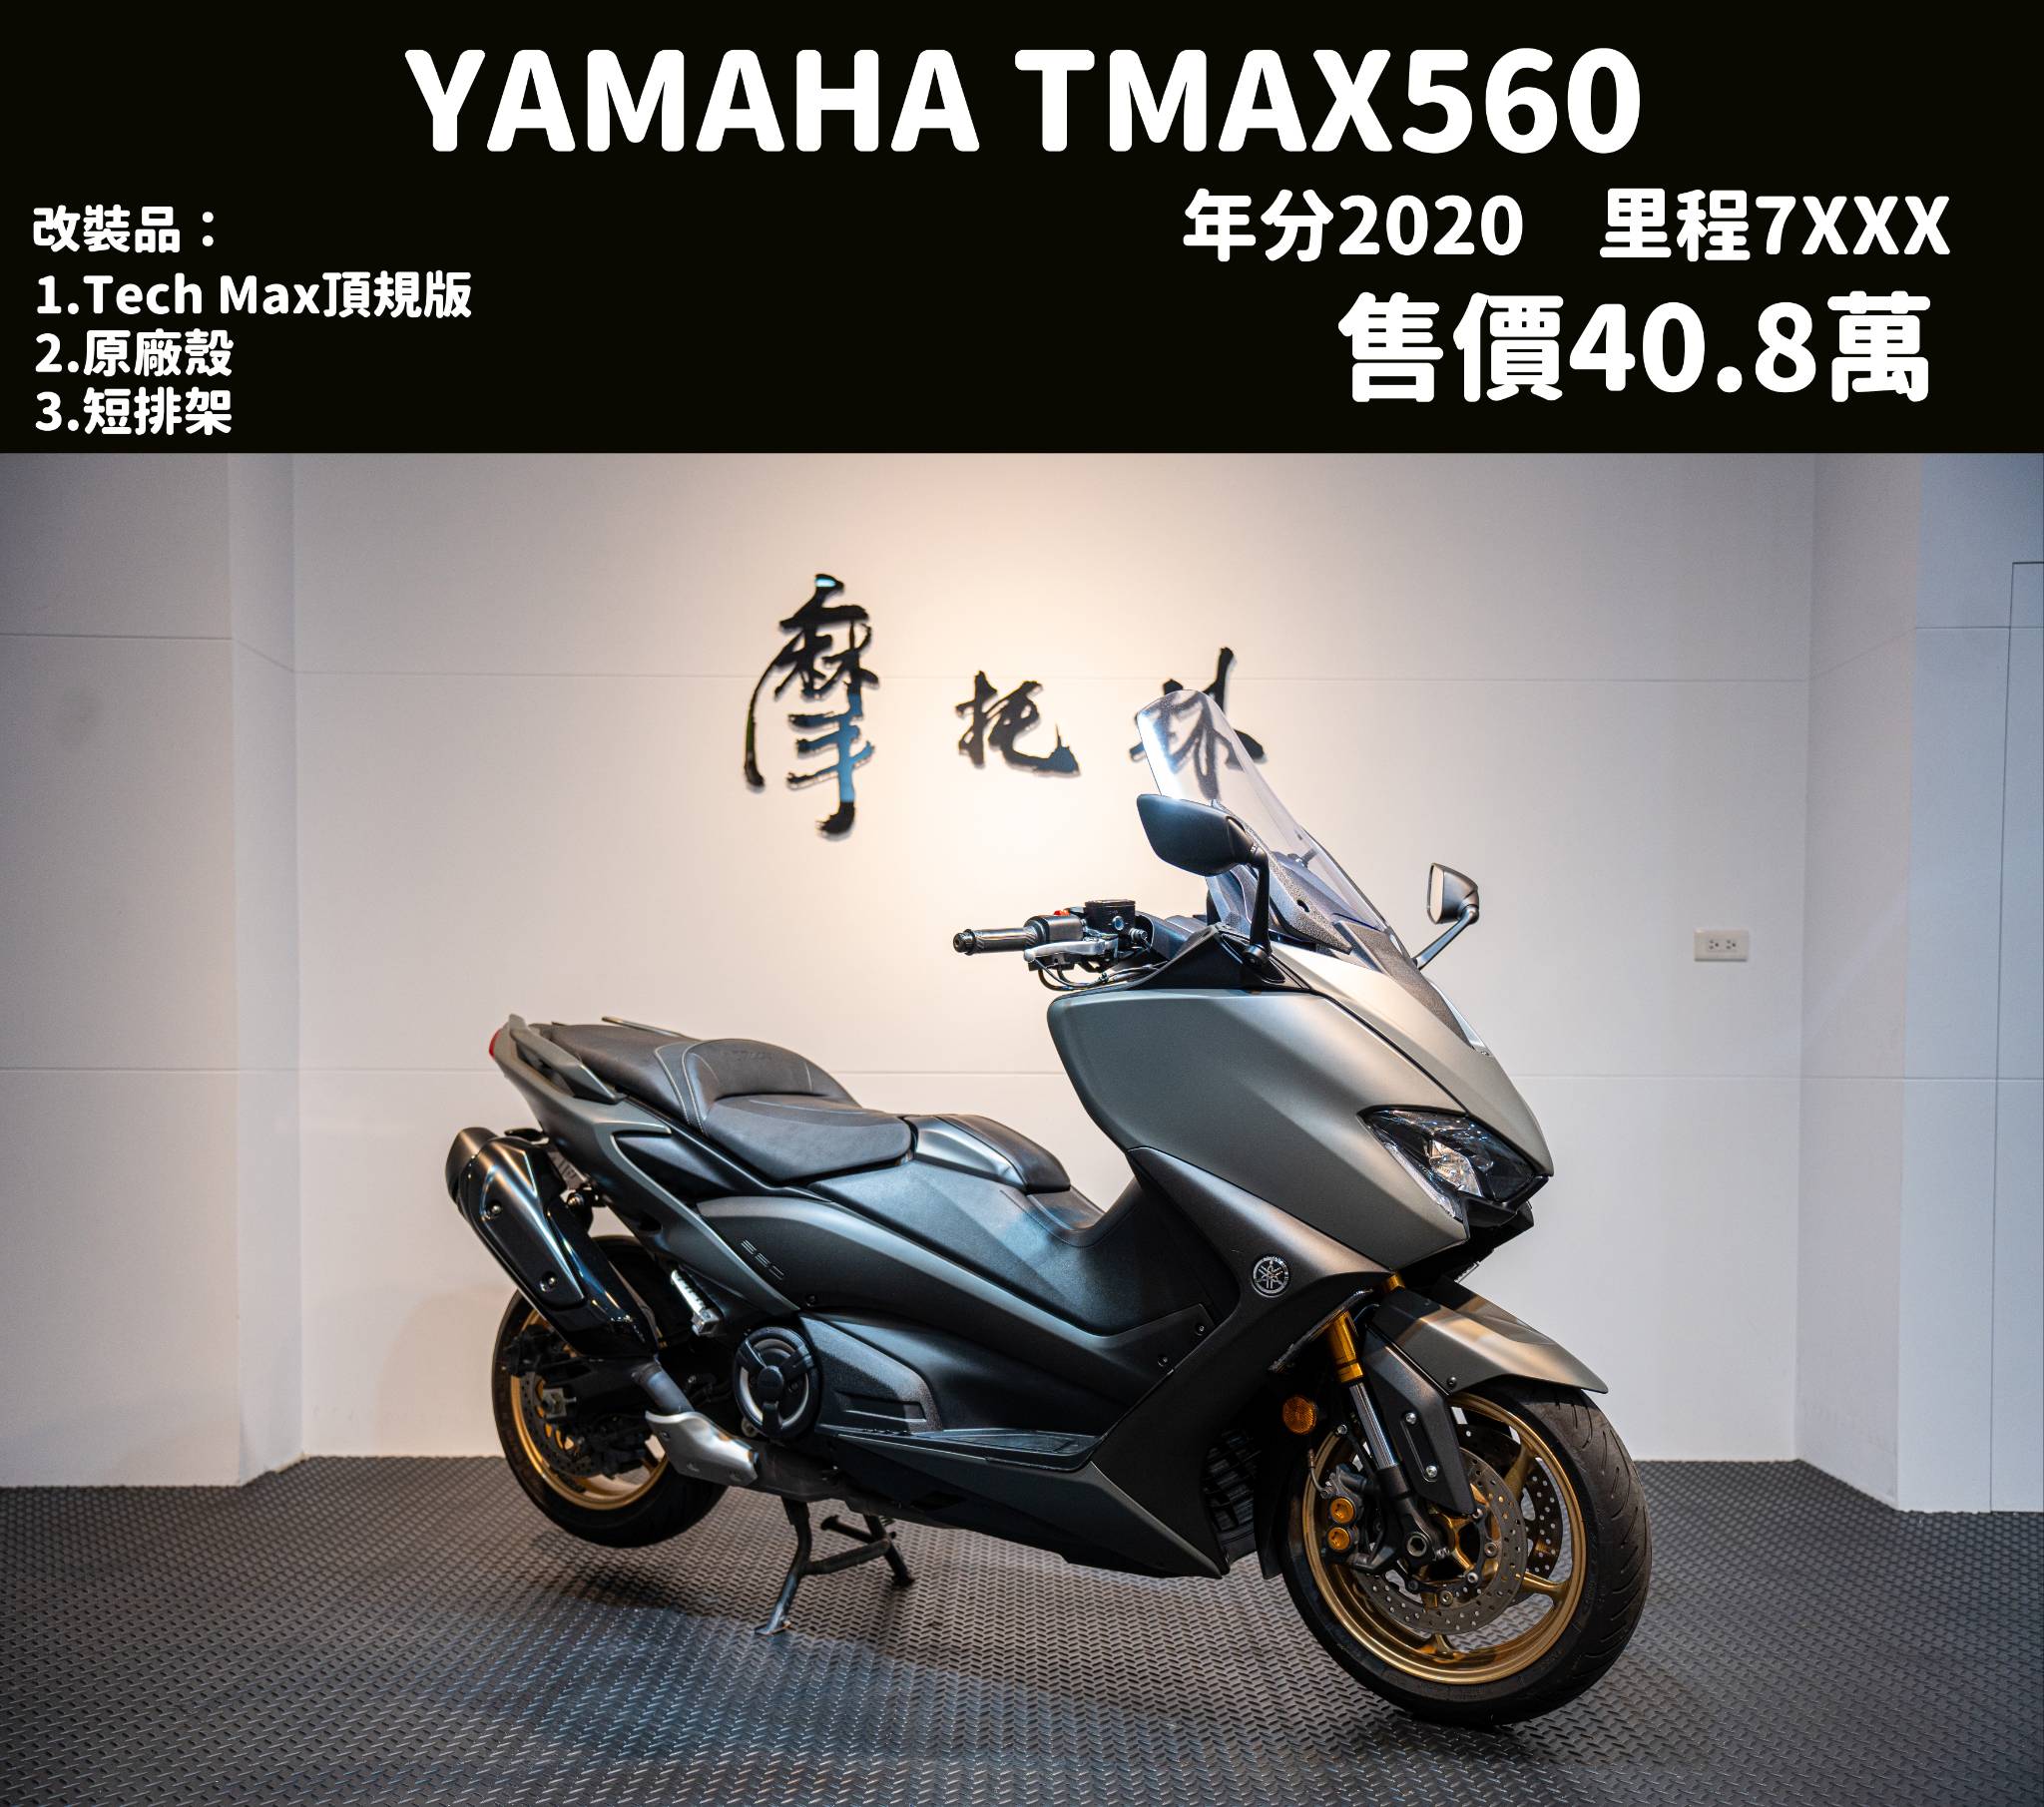 YAMAHA TMAX560 - 中古/二手車出售中 YAMAHA TMAX560 Tech Max | 個人自售